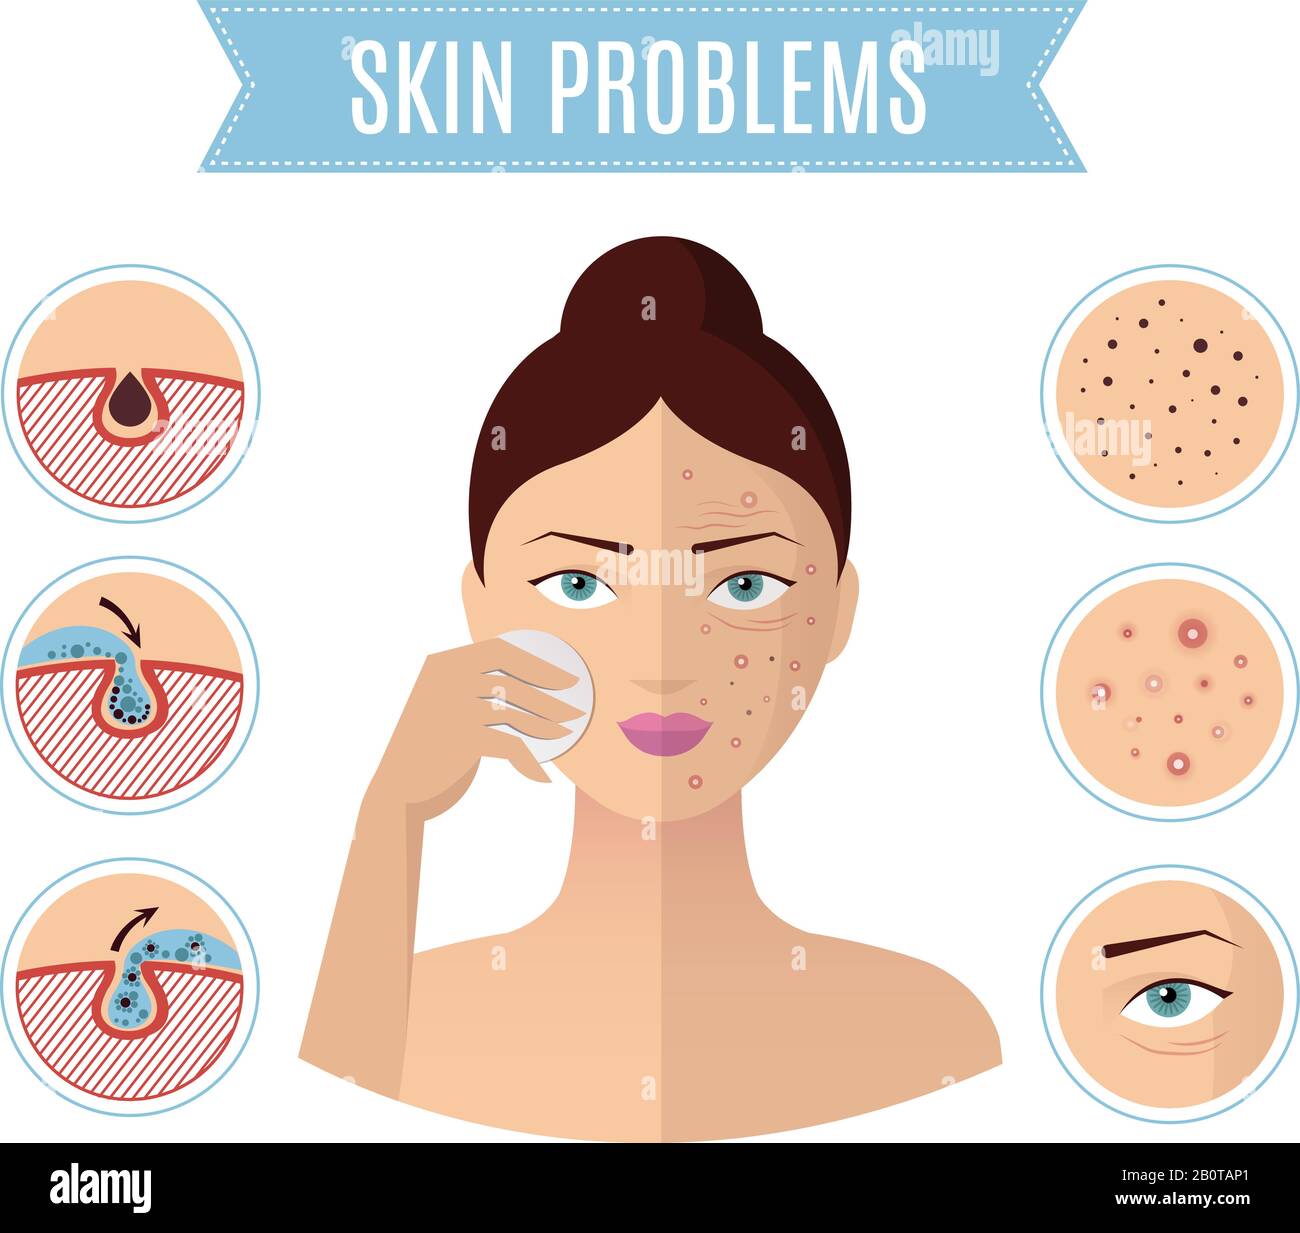 Risoluzione dei problemi della pelle, trattamento dell'acne e poro di pulizia per le icone perfette del vettore facciale delle donne. Problema con il viso della pelle, illustrazione della pelle del viso di bellezza Illustrazione Vettoriale